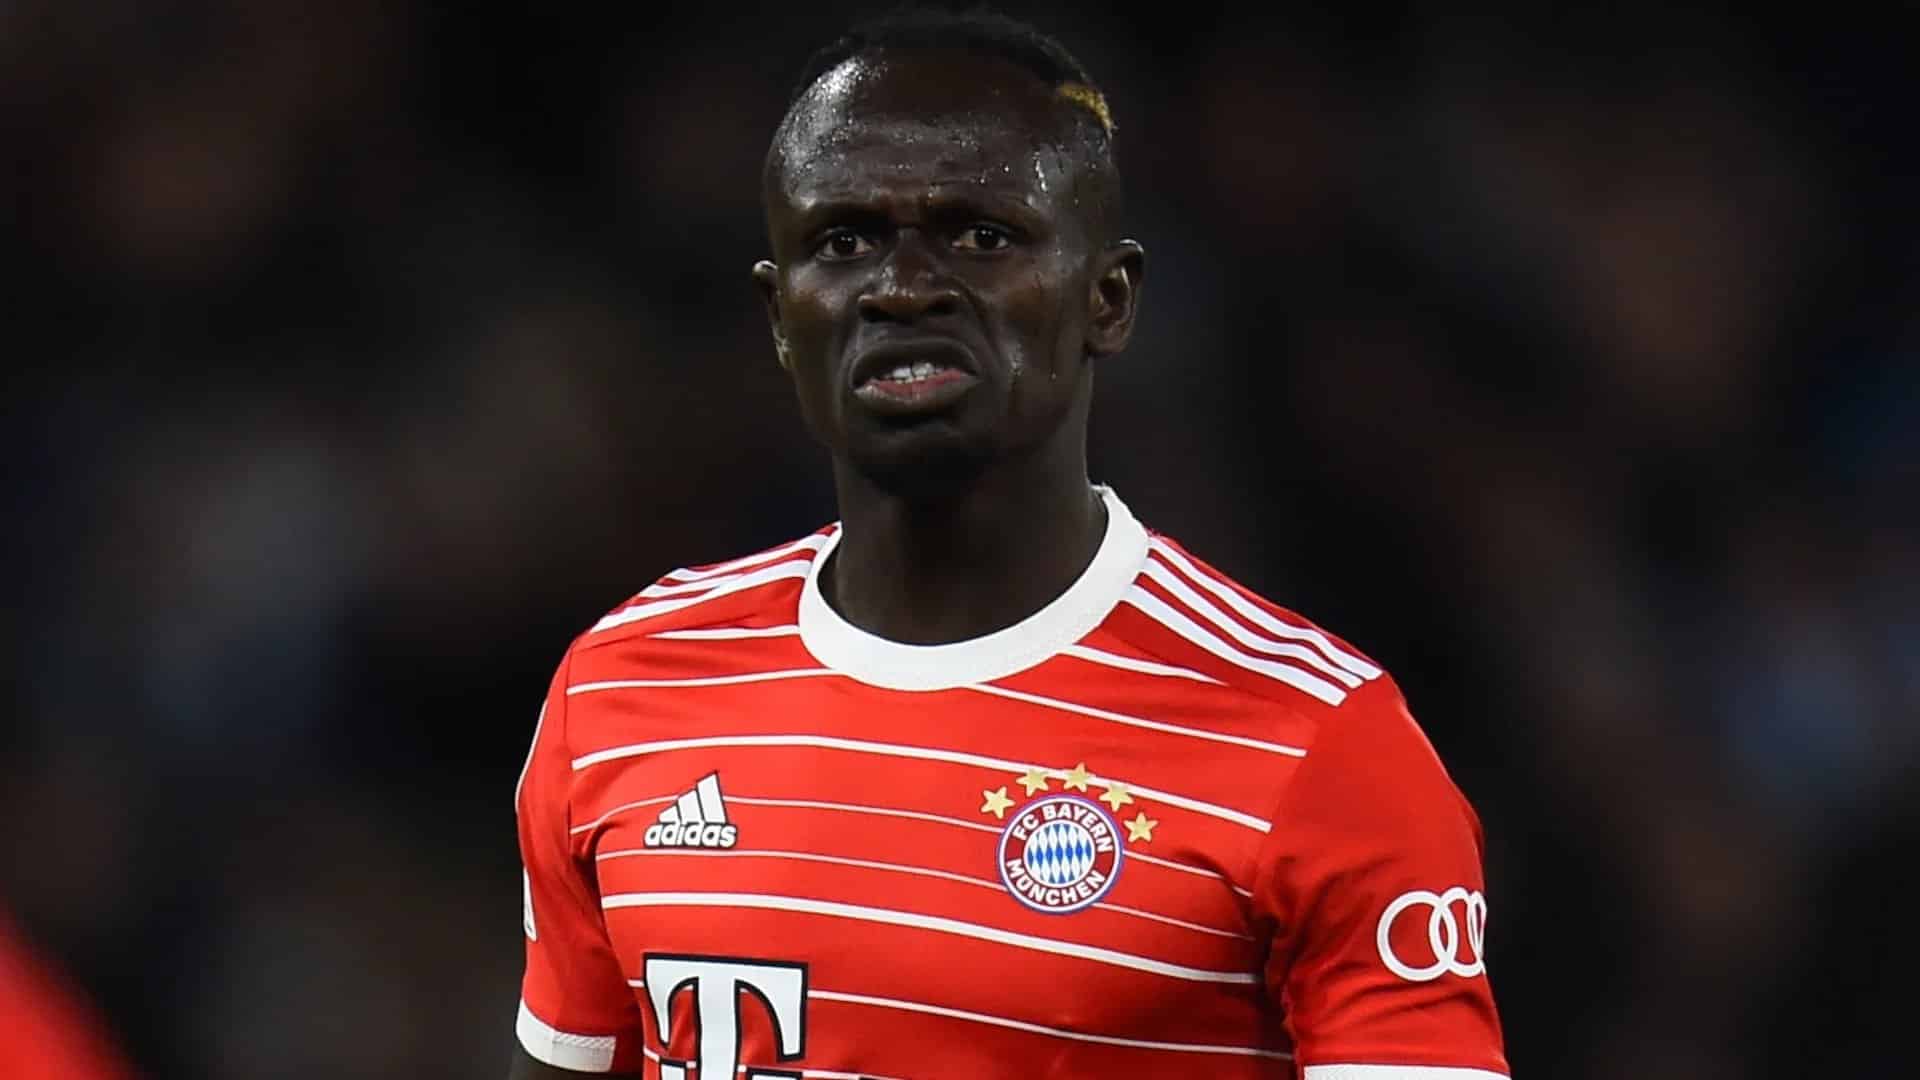 Leroy conseille à Sadio Mané de quitter le Bayern : « C’est mieux pour lui ! »